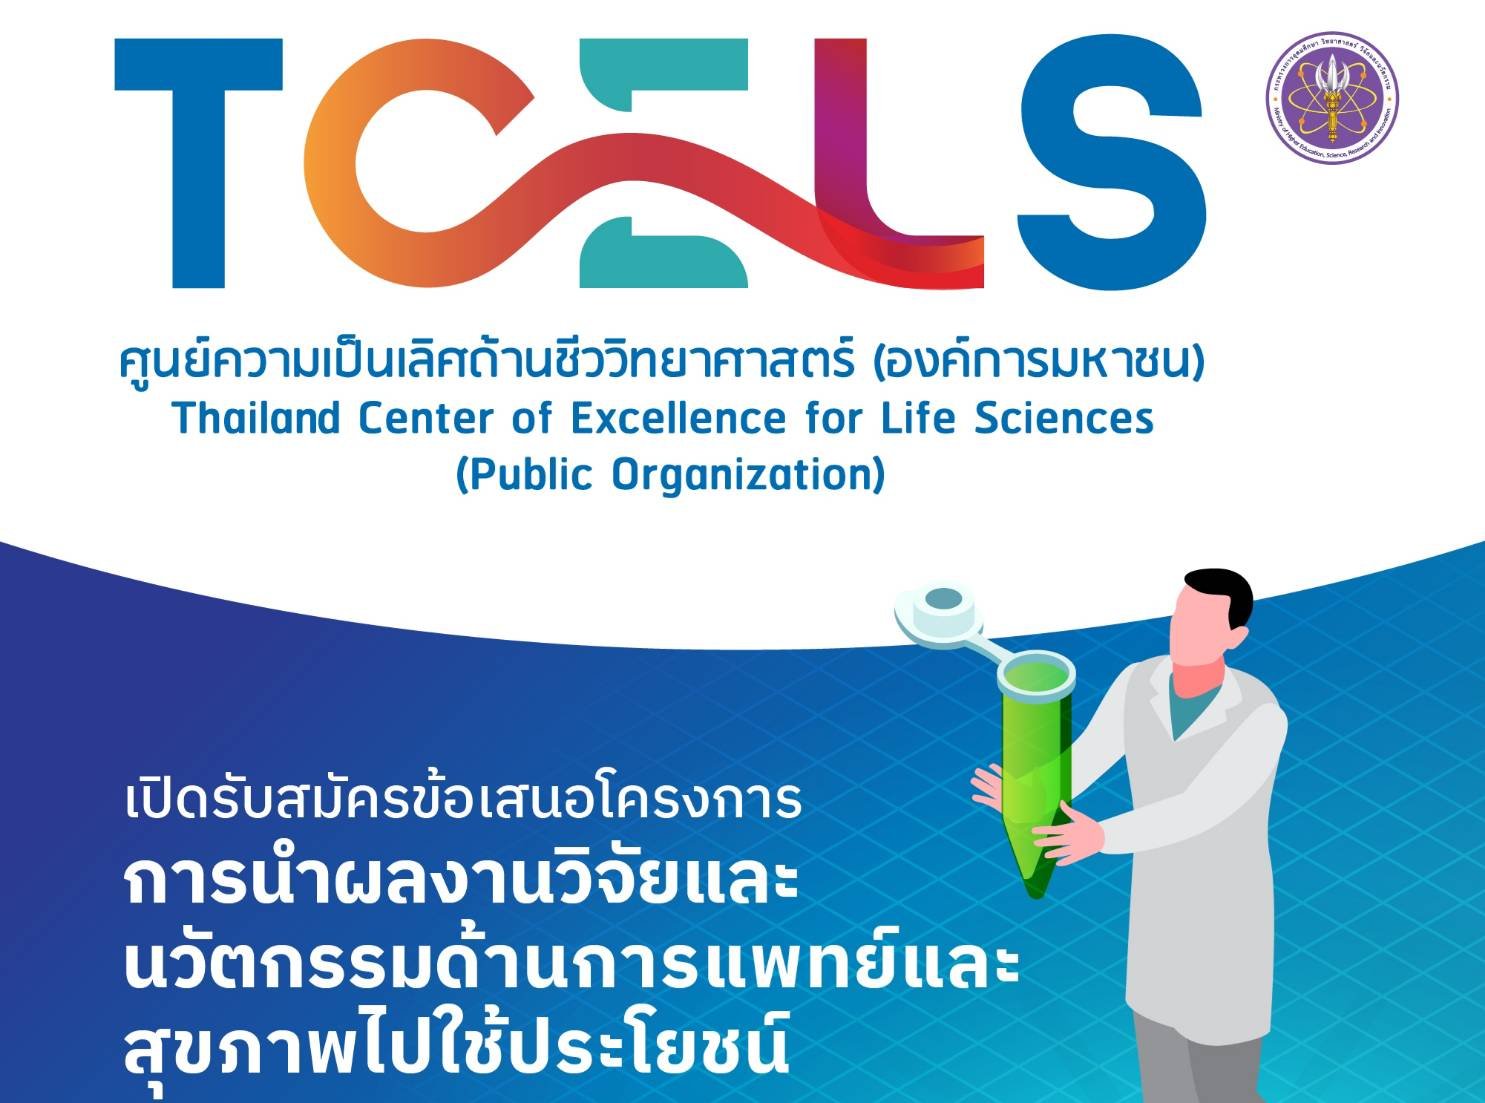 TCELS เปิดรับข้อเสนอโครงการ Research Utilization ปี 2567 ร่วมขับเคลื่อนอุตสาหกรรมการแพทย์-สุขภาพไทย